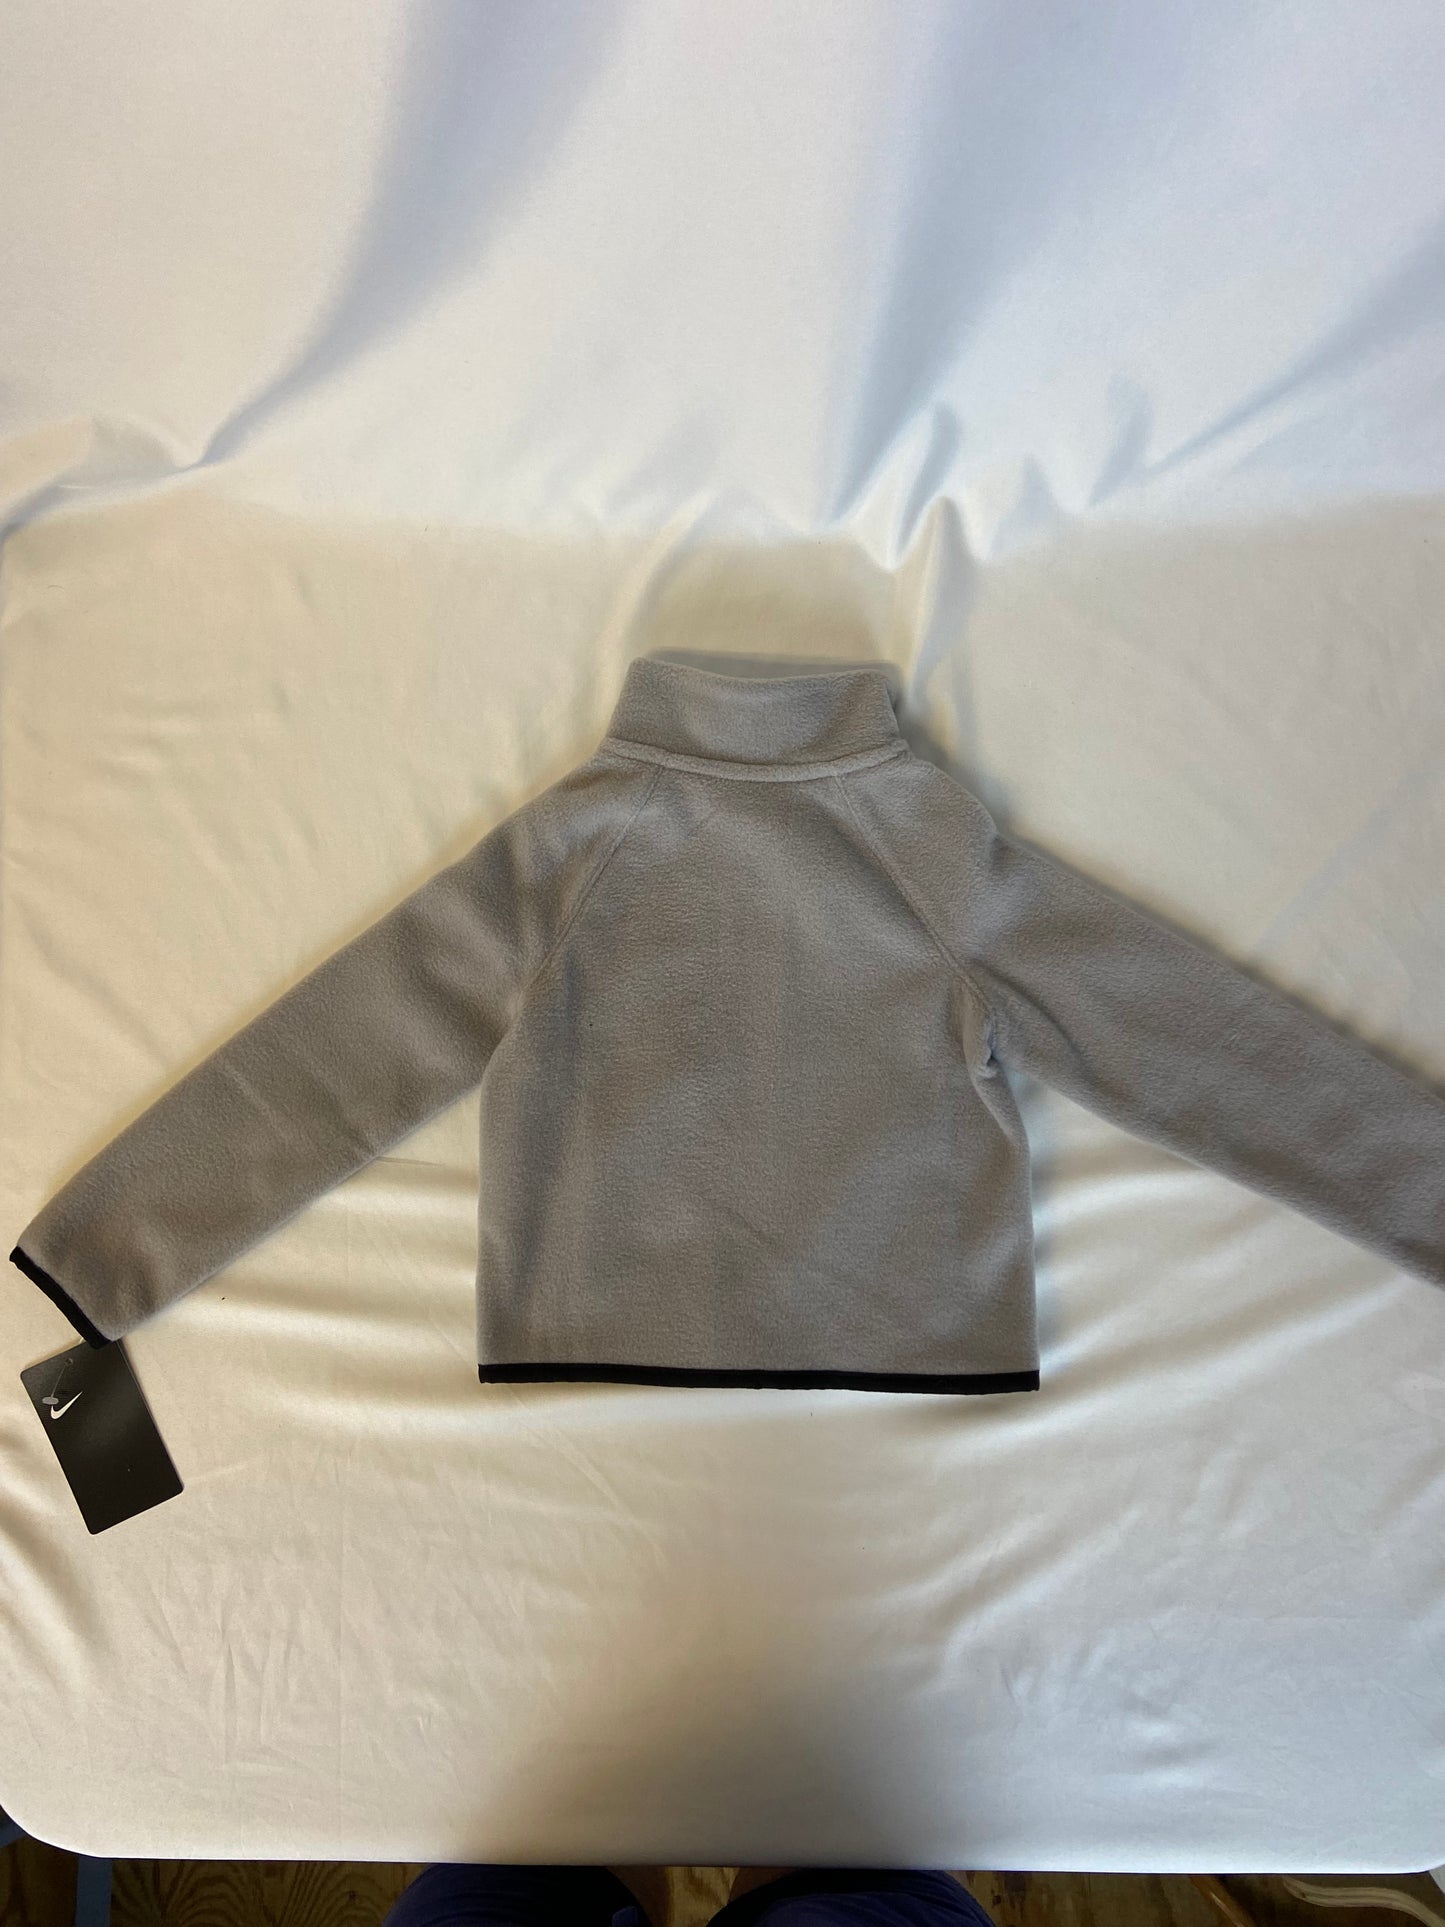 Nike NWT 2T Gray Fleece Jacket